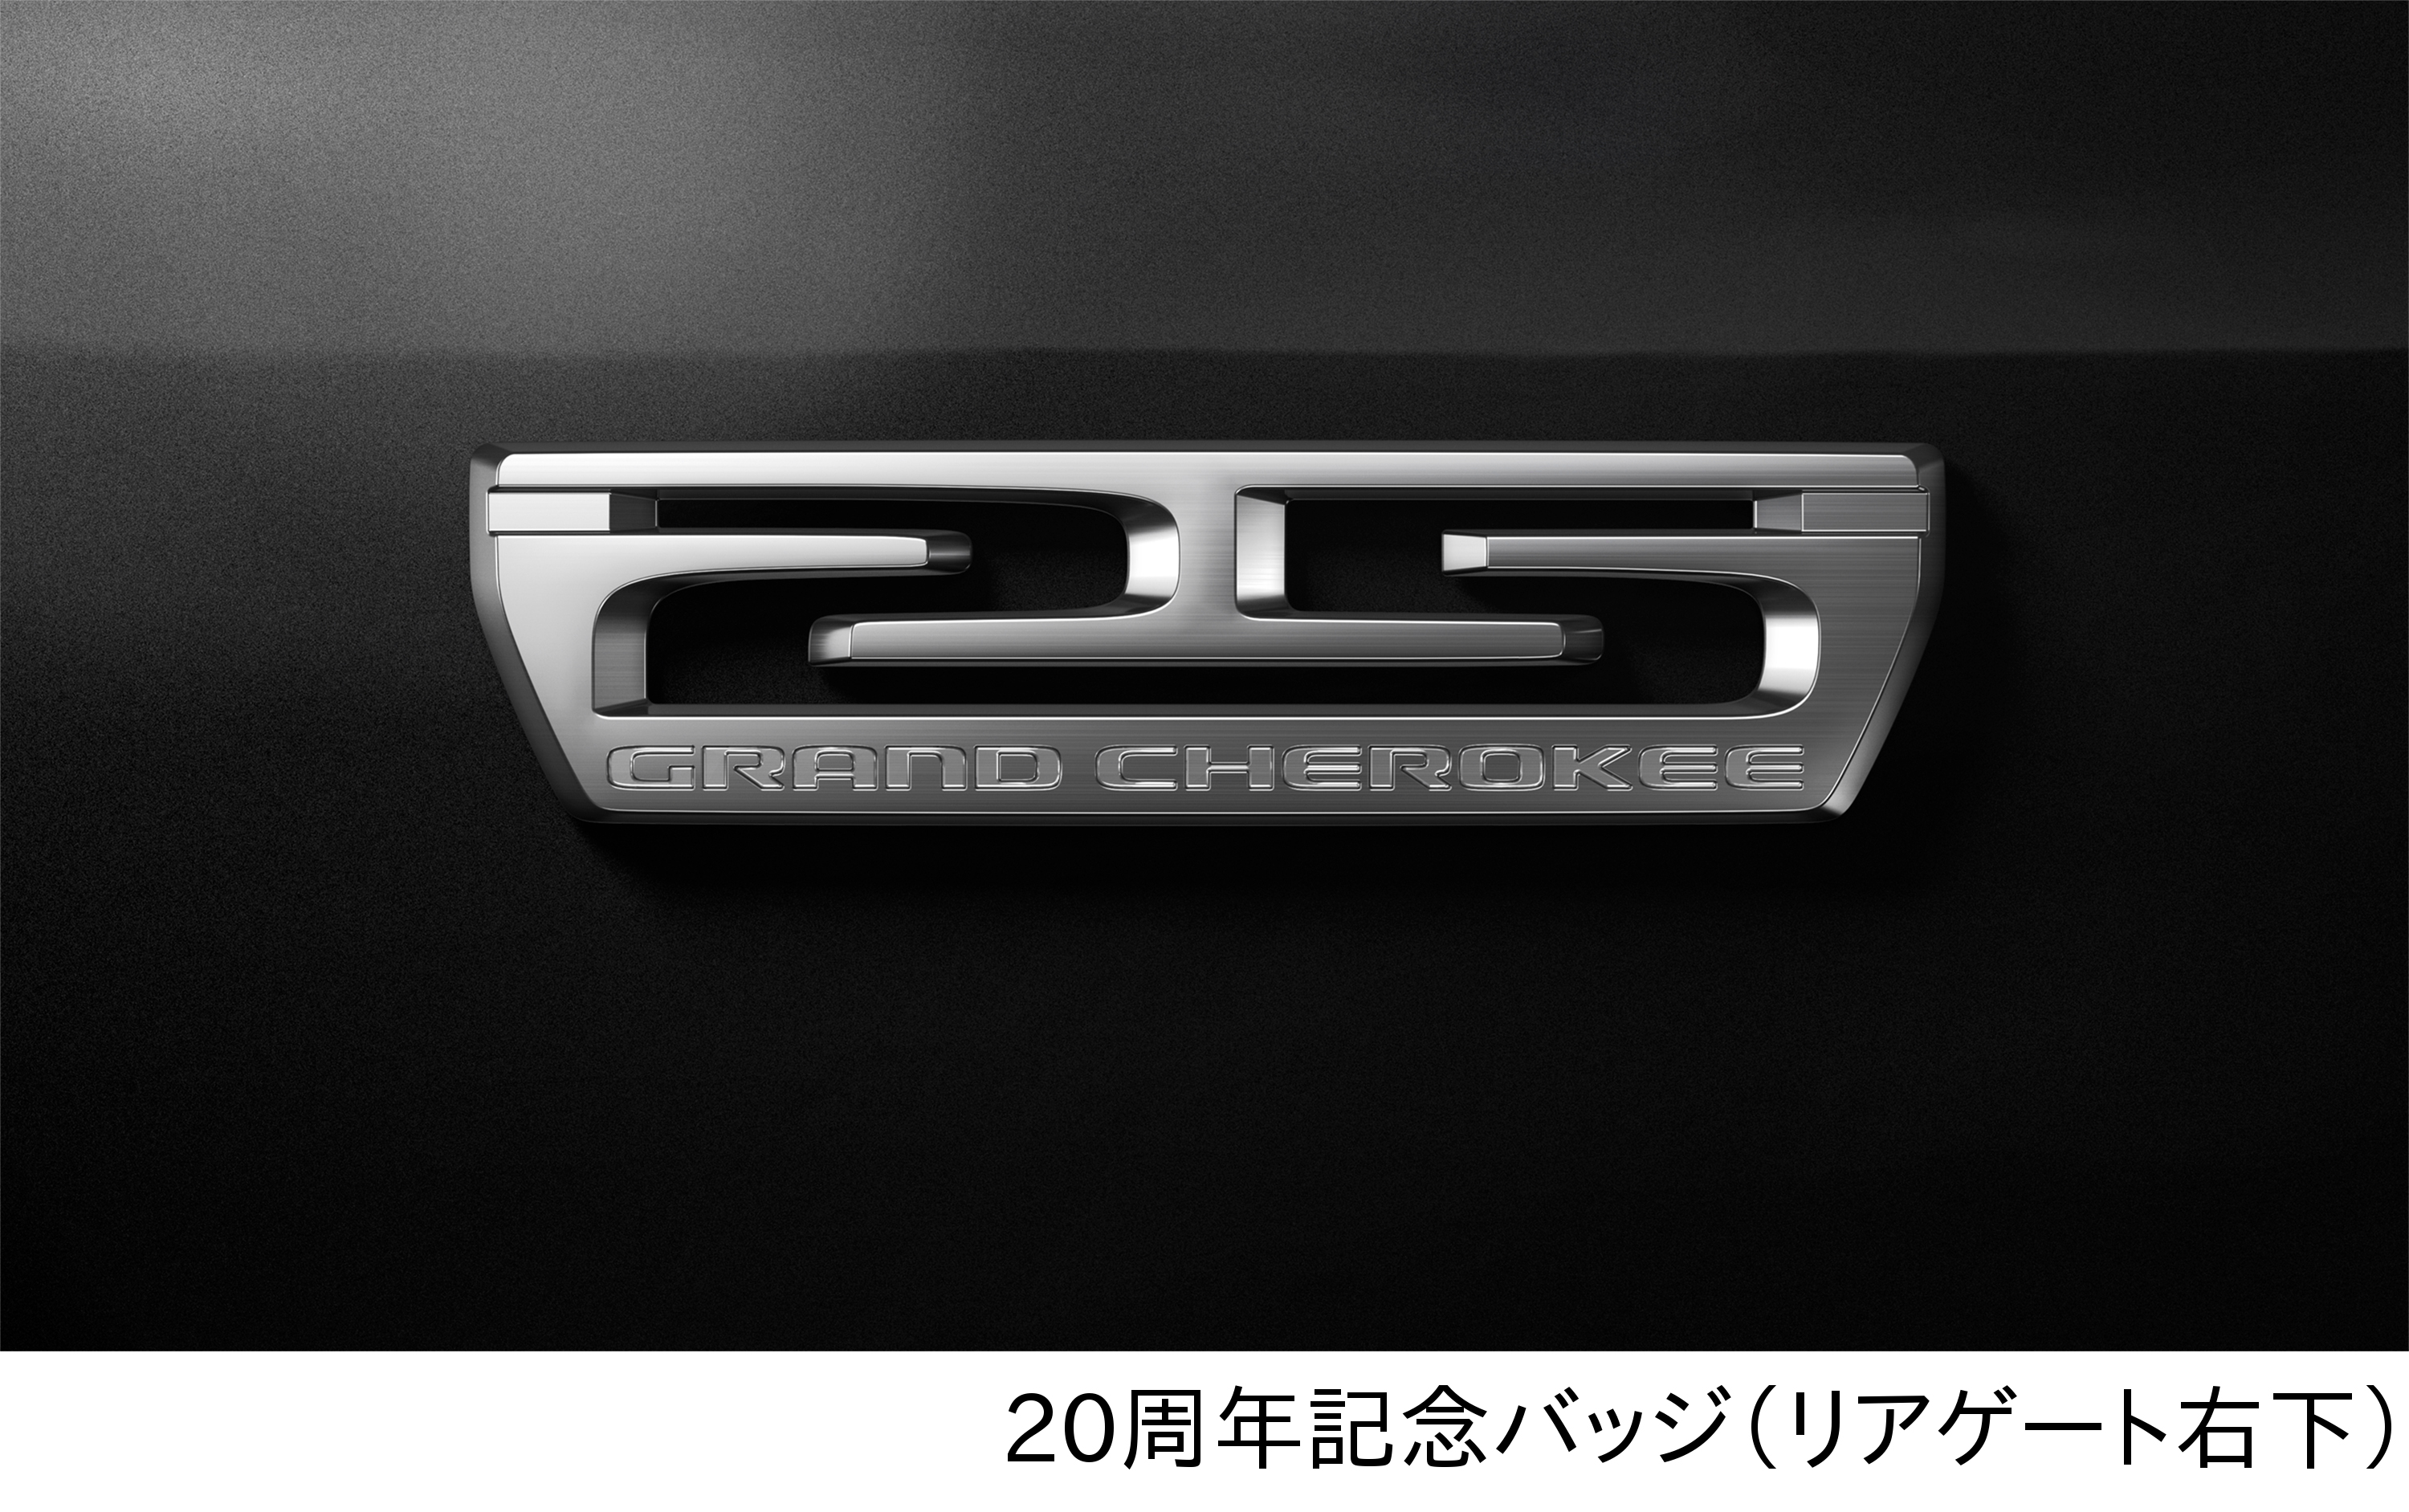 新車 ジープ グランドチェロキーが仕様変更を受け 限定車 スターリングエディション も設定 04 25th Badge Hd Clicccar Com クリッカー